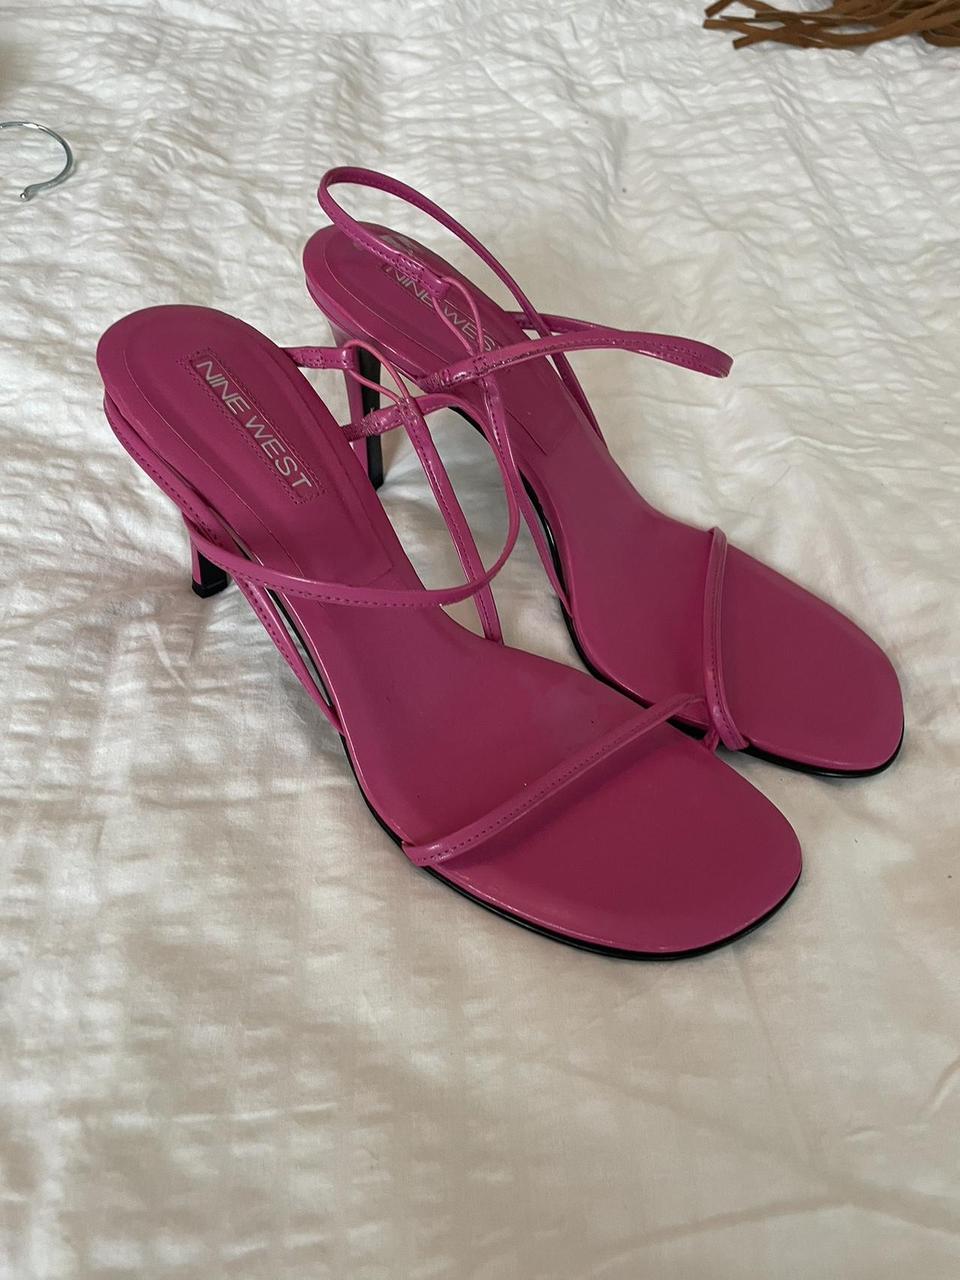 Vintage nine west pink strap oh heels - Depop